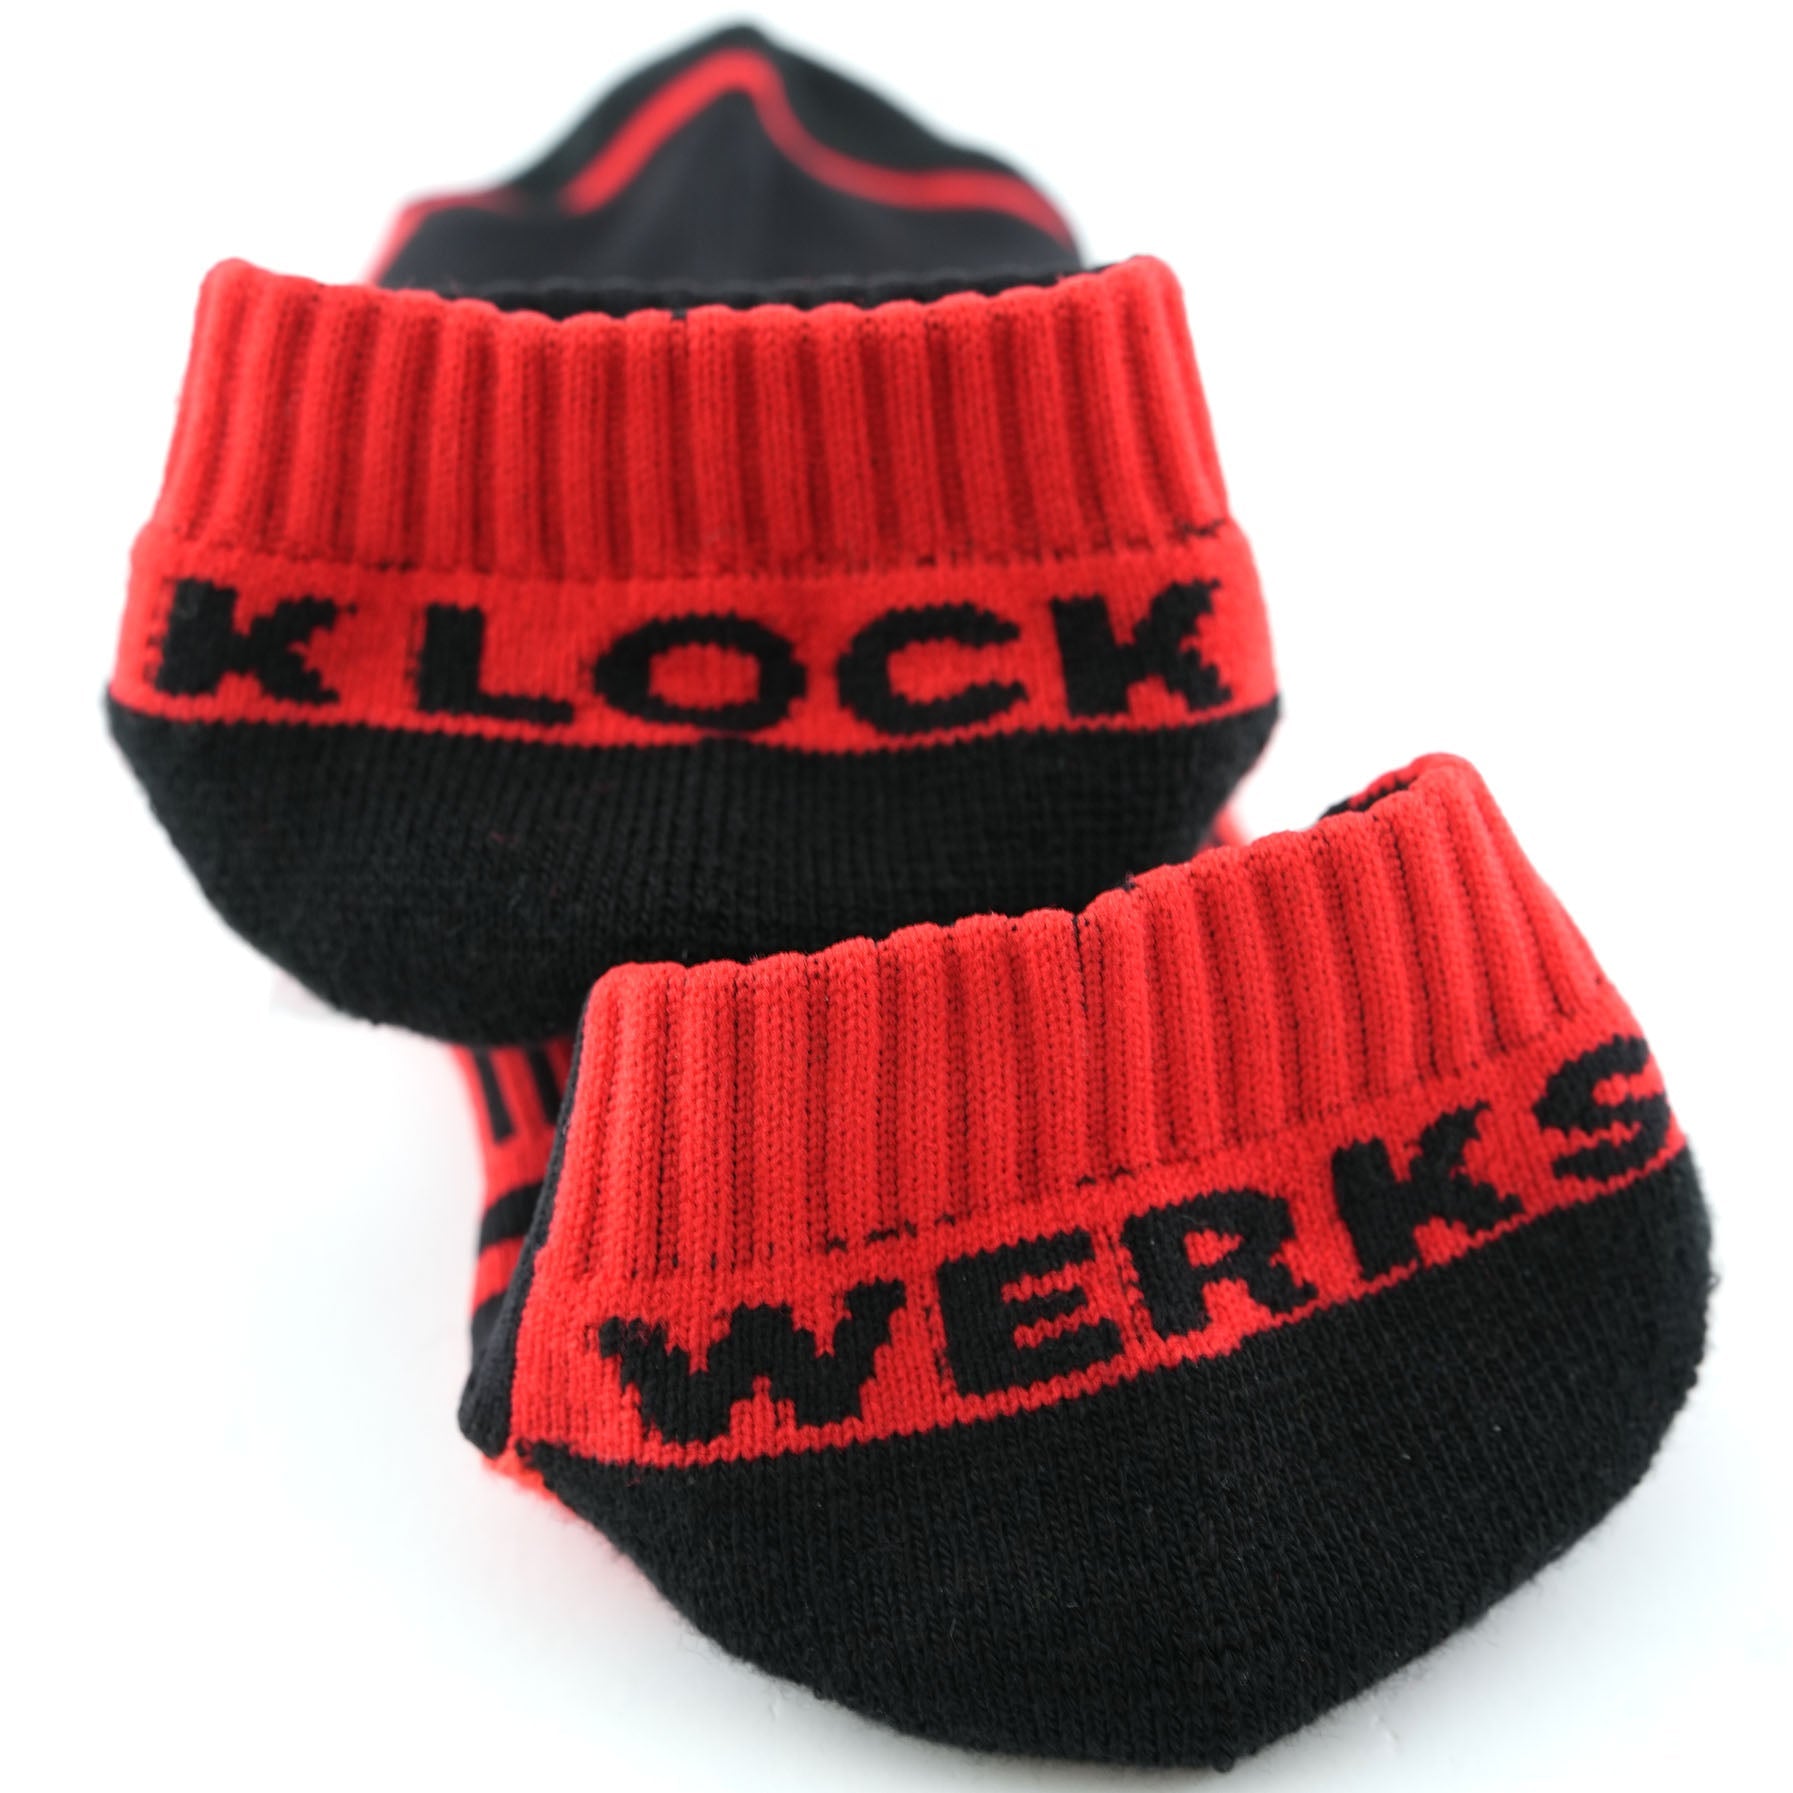 Klock Werks x Fuel Klock Low Profile Socks in Red with Klock Werks on the heels